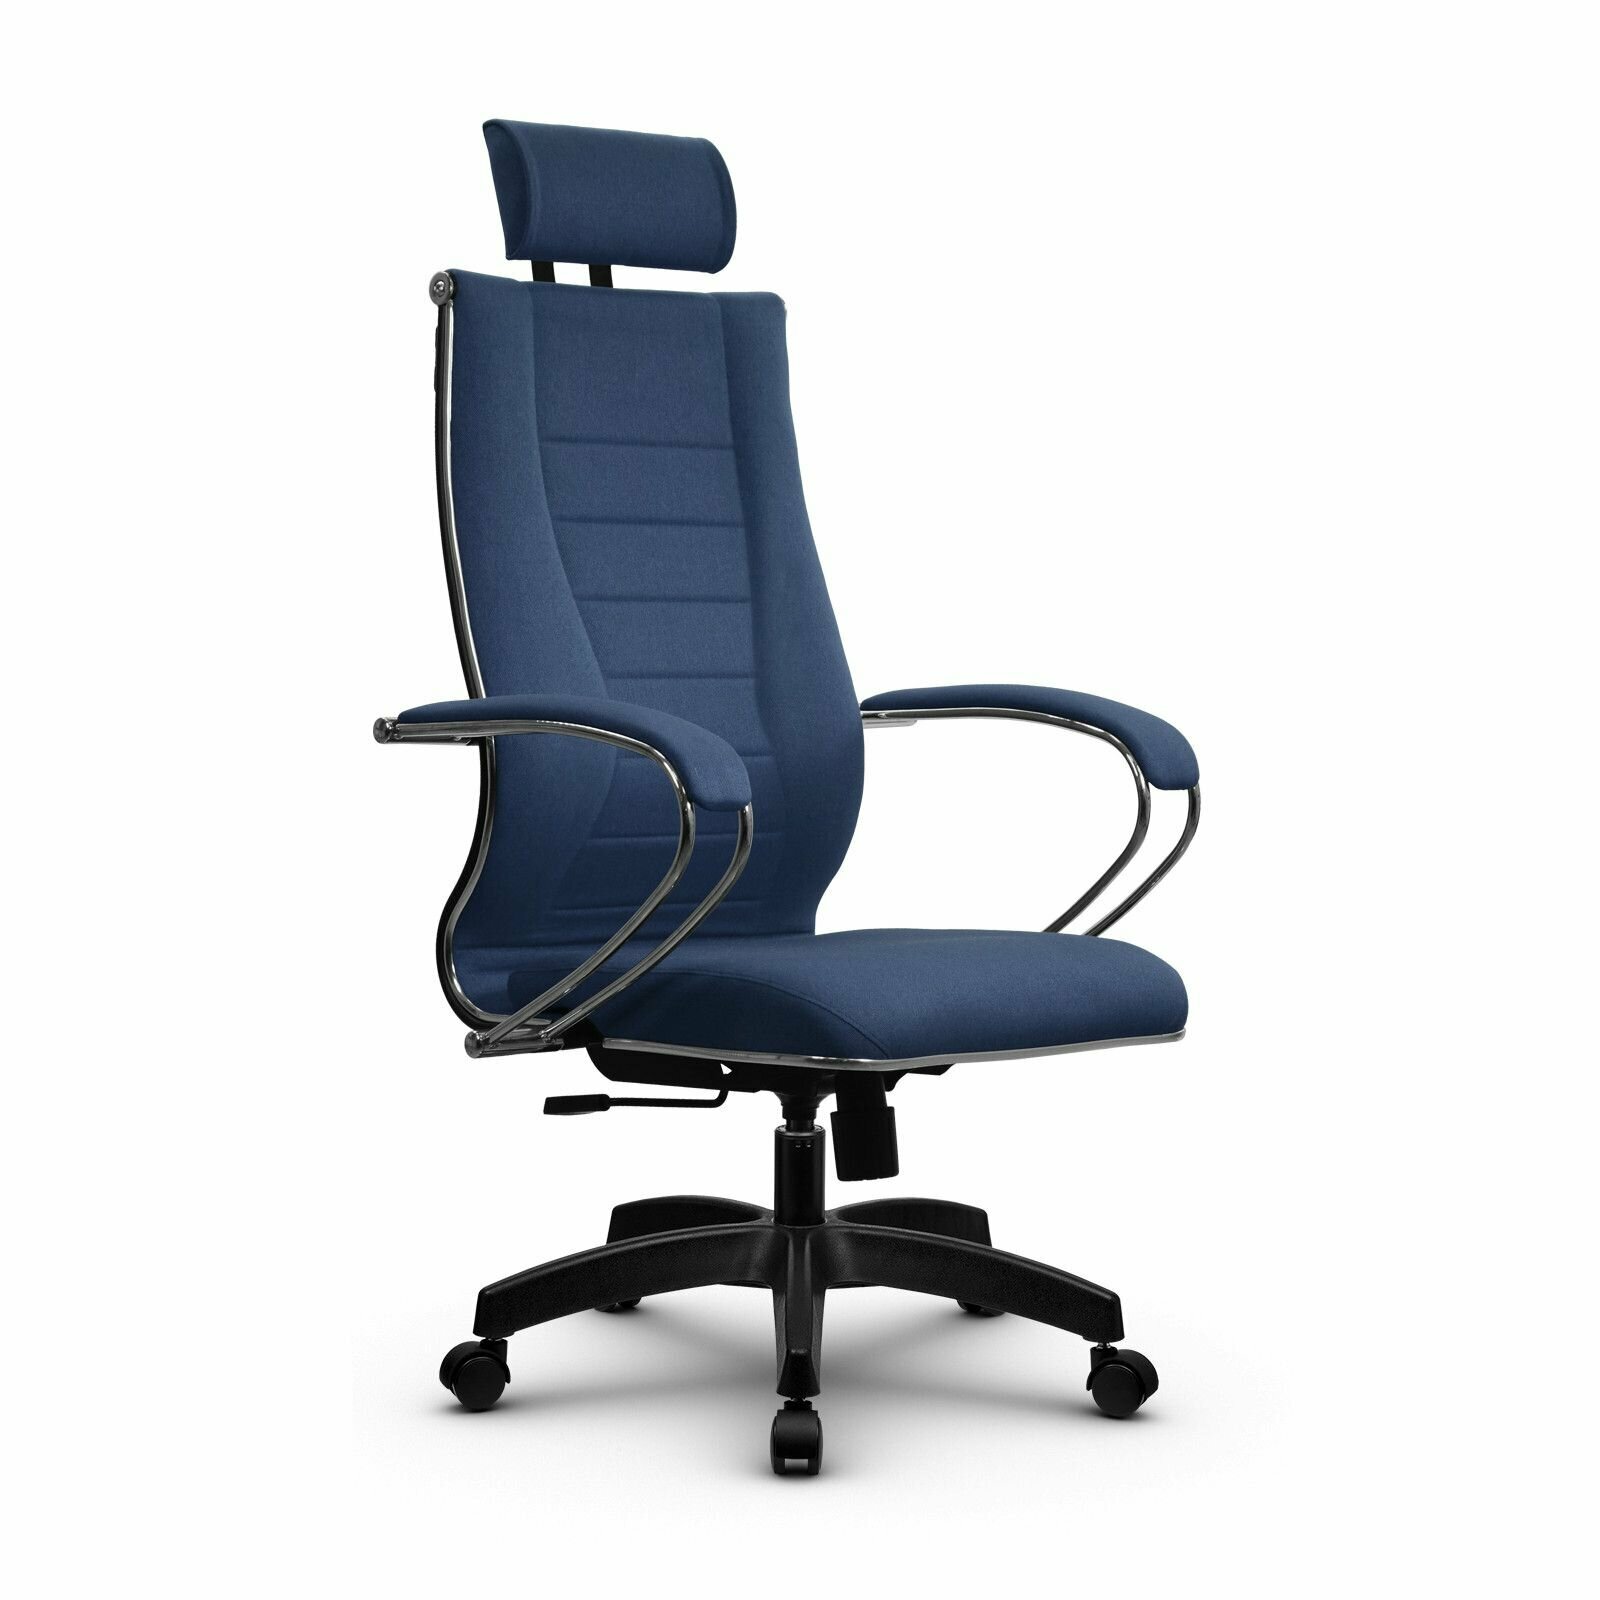 Компьютерное офисное кресло Metta B 2m 34PF/К127 осн. 001 (17831) Синее